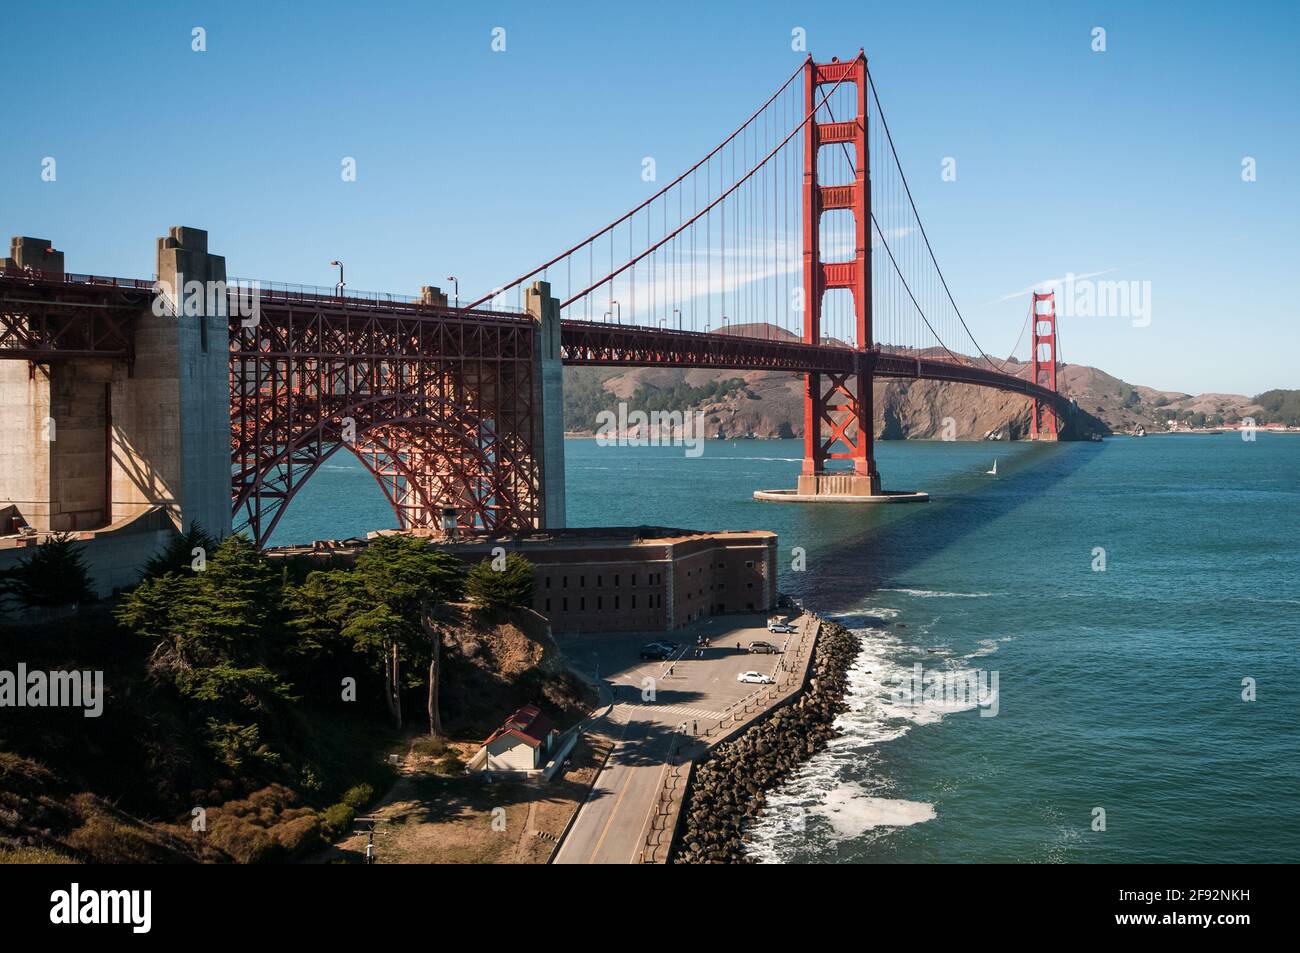 The Golden Gate Bridge is a suspension bridge that spans the